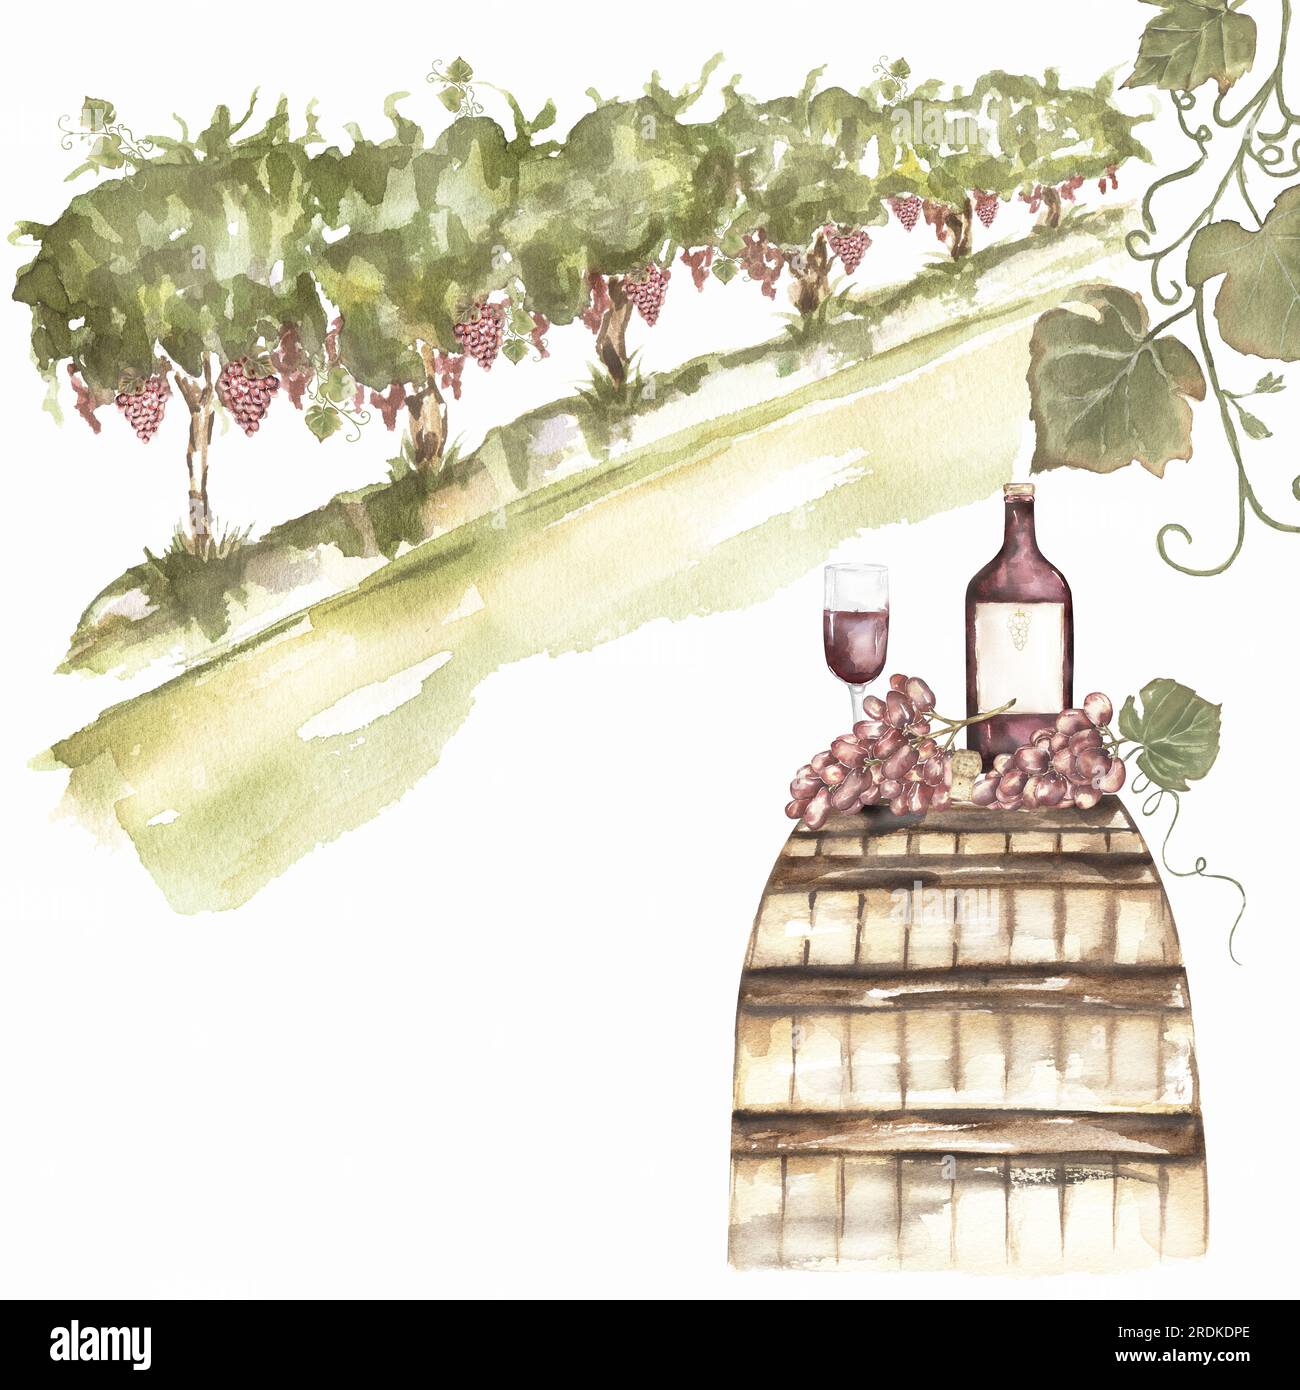 Paesaggio verde di campi di uva, vendemmia e bottiglia di vino. Acquerello di uva dipinta a mano e barello di legno. Design del concetto vinicolo italiano. Vino francese malato Foto Stock